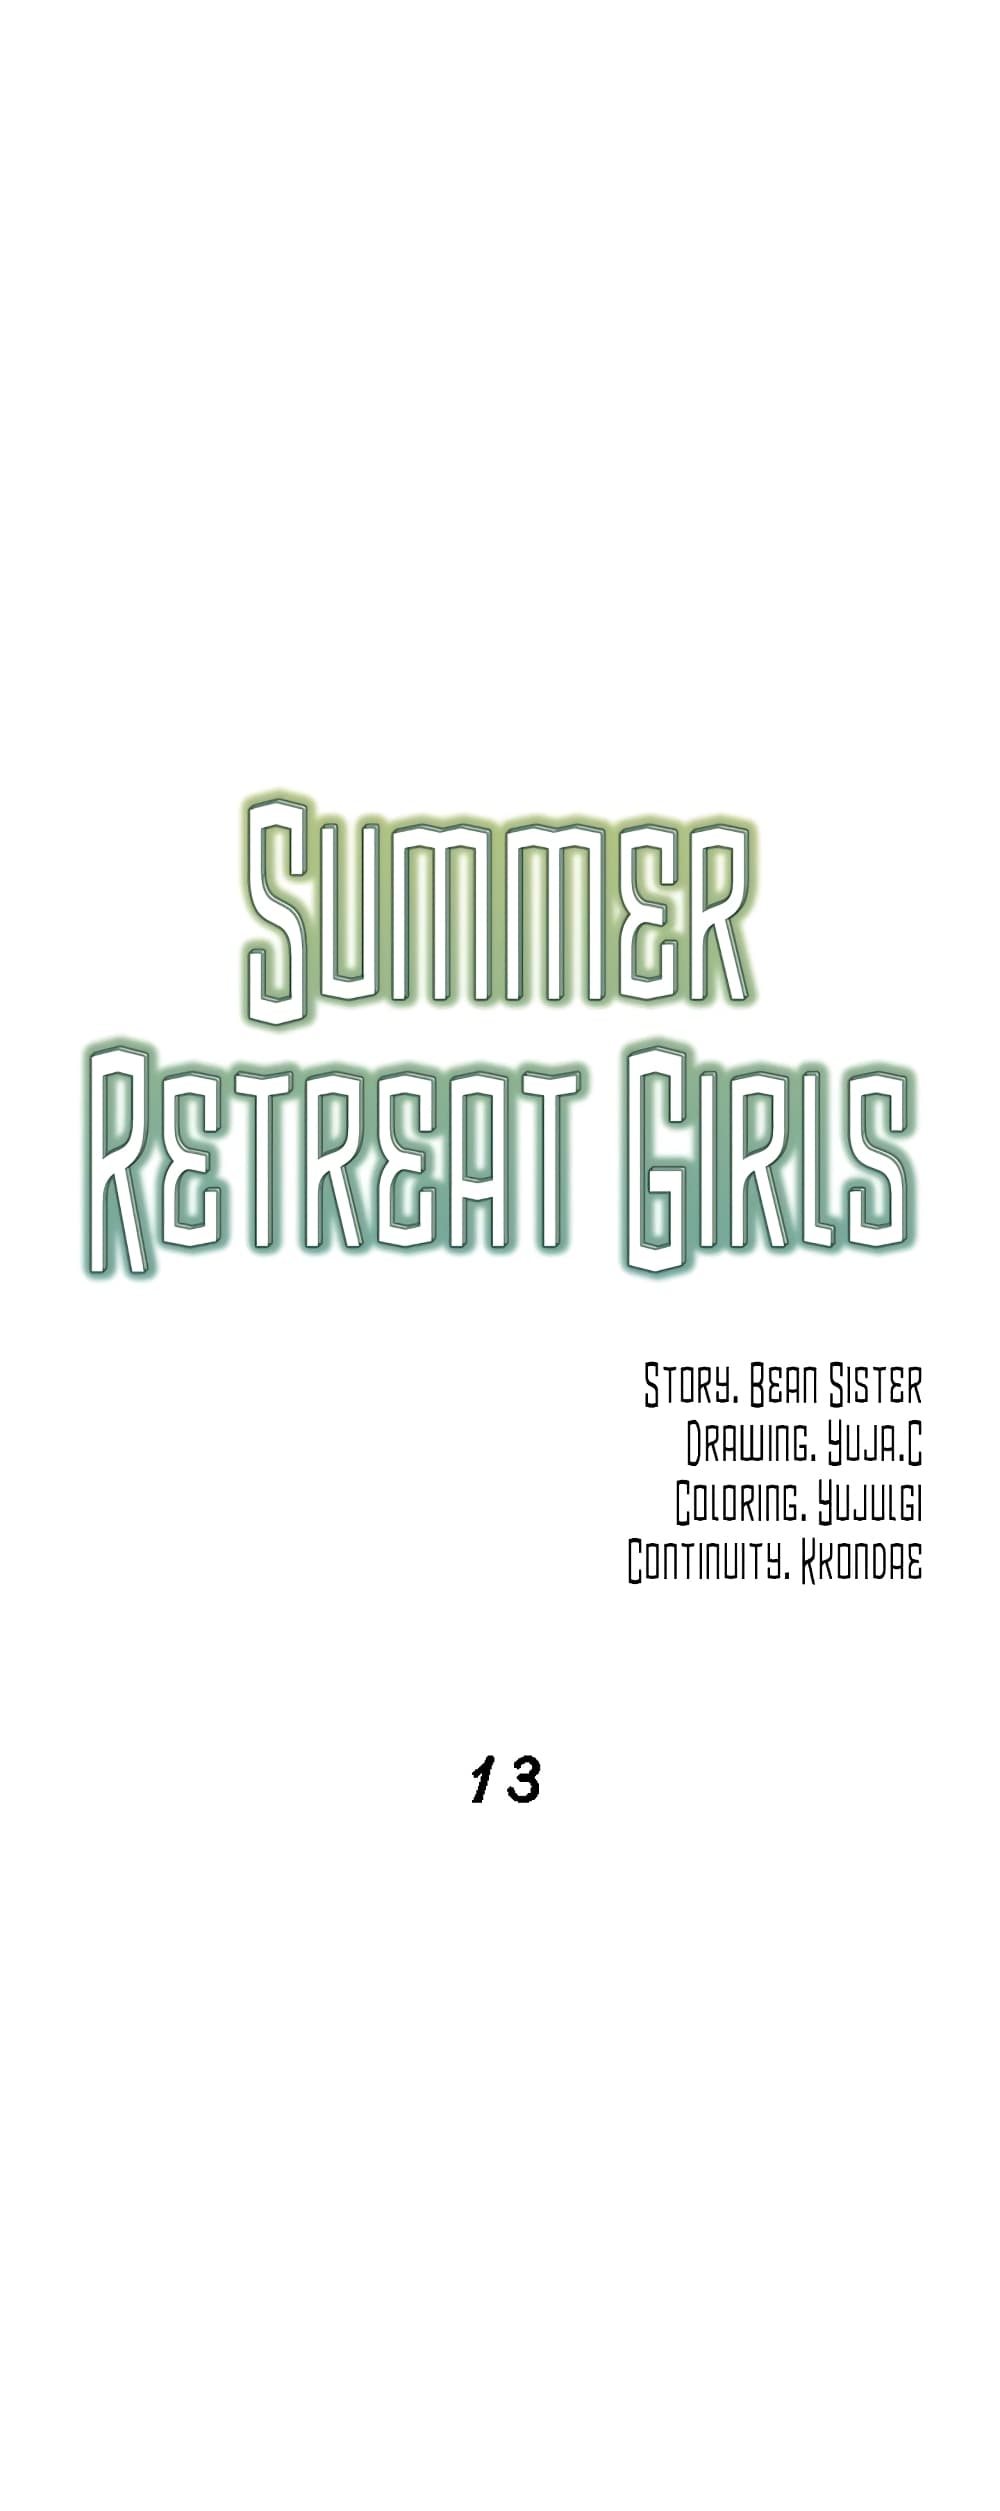 Summer Retreat Girls 13 22